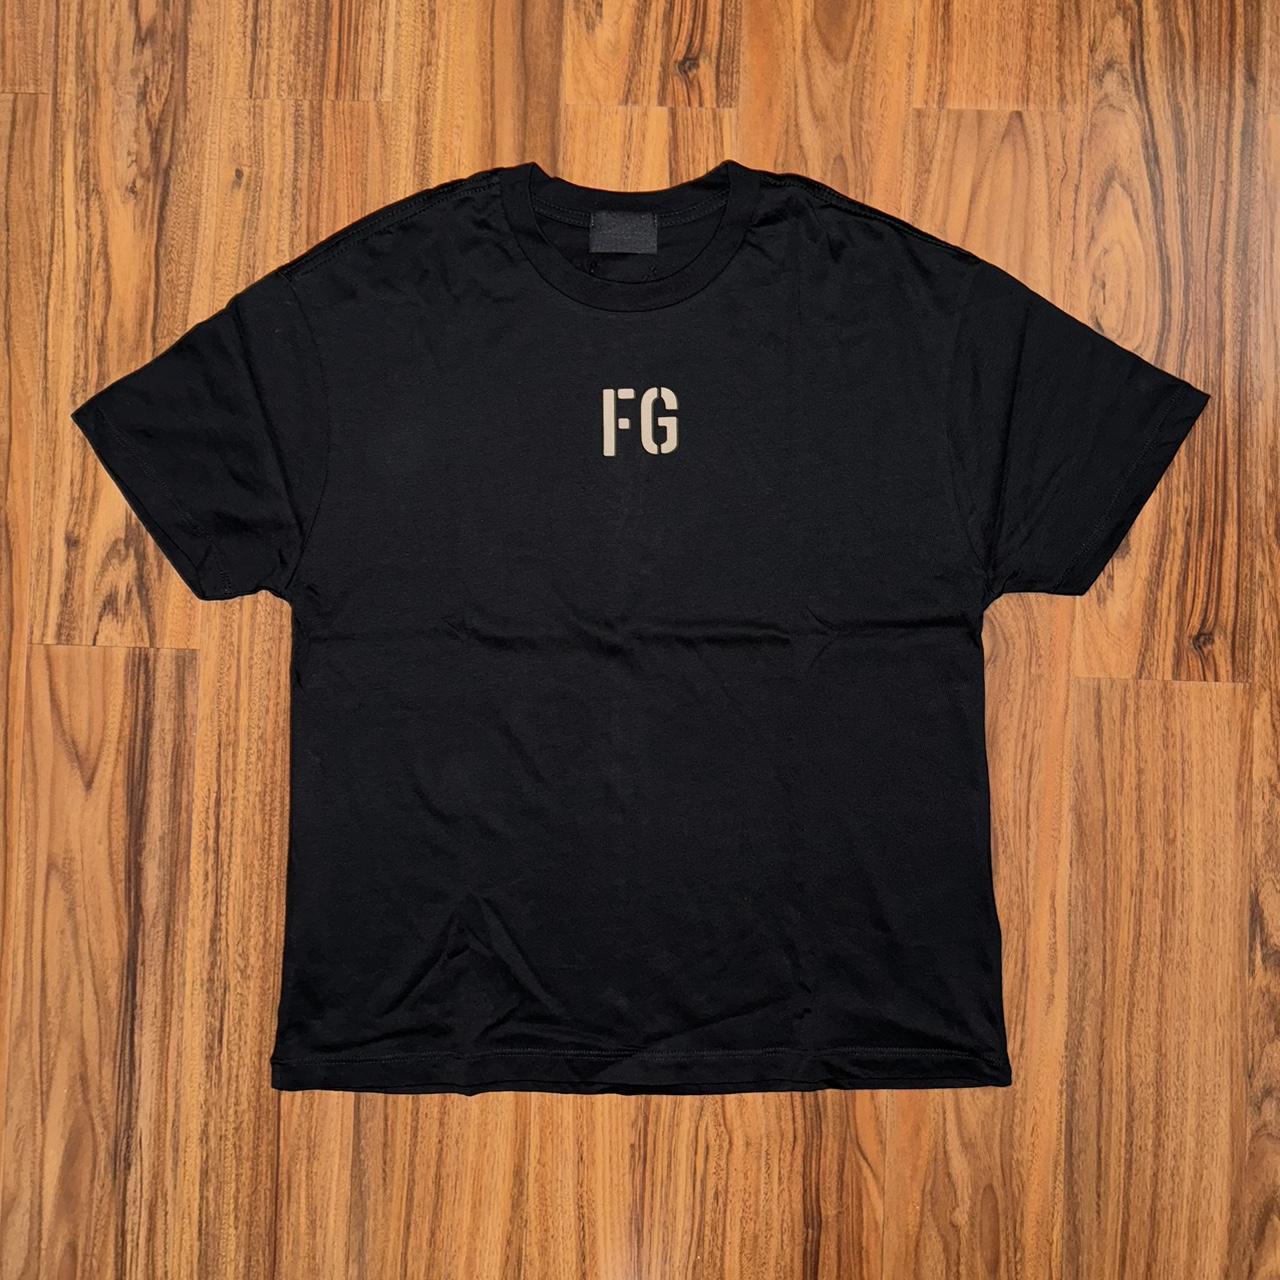 Fear Of God Gf Tshirt | sincovaga.com.br